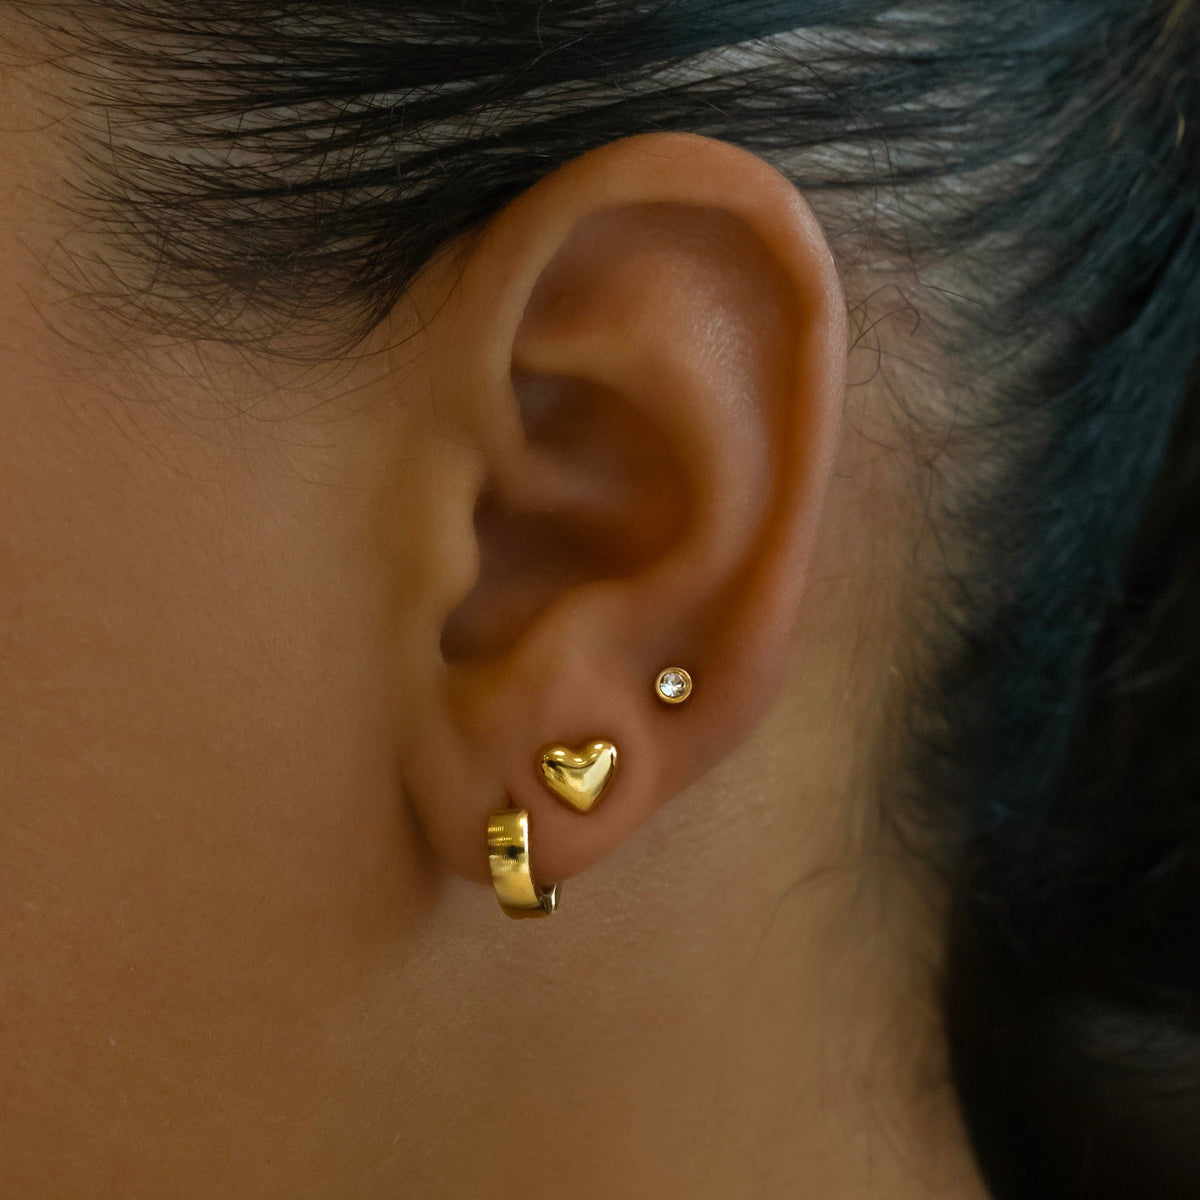 Bohomoon Stainless Steel Tink Stud Earrings